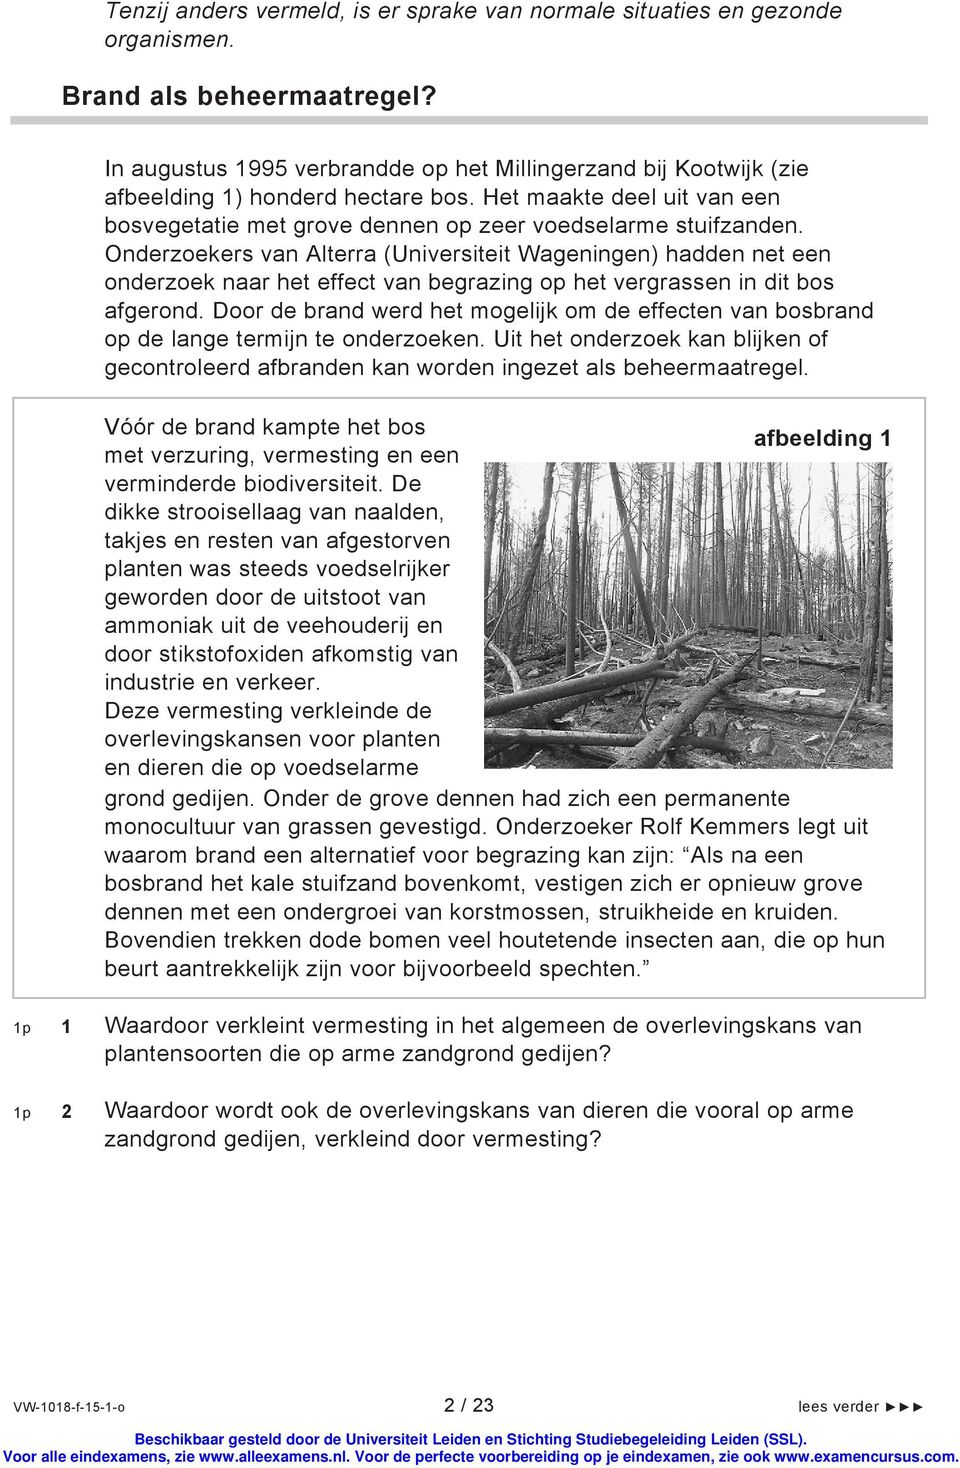 Onderzoekers van Alterra (Universiteit Wageningen) hadden net een onderzoek naar het effect van begrazing op het vergrassen in dit bos afgerond.